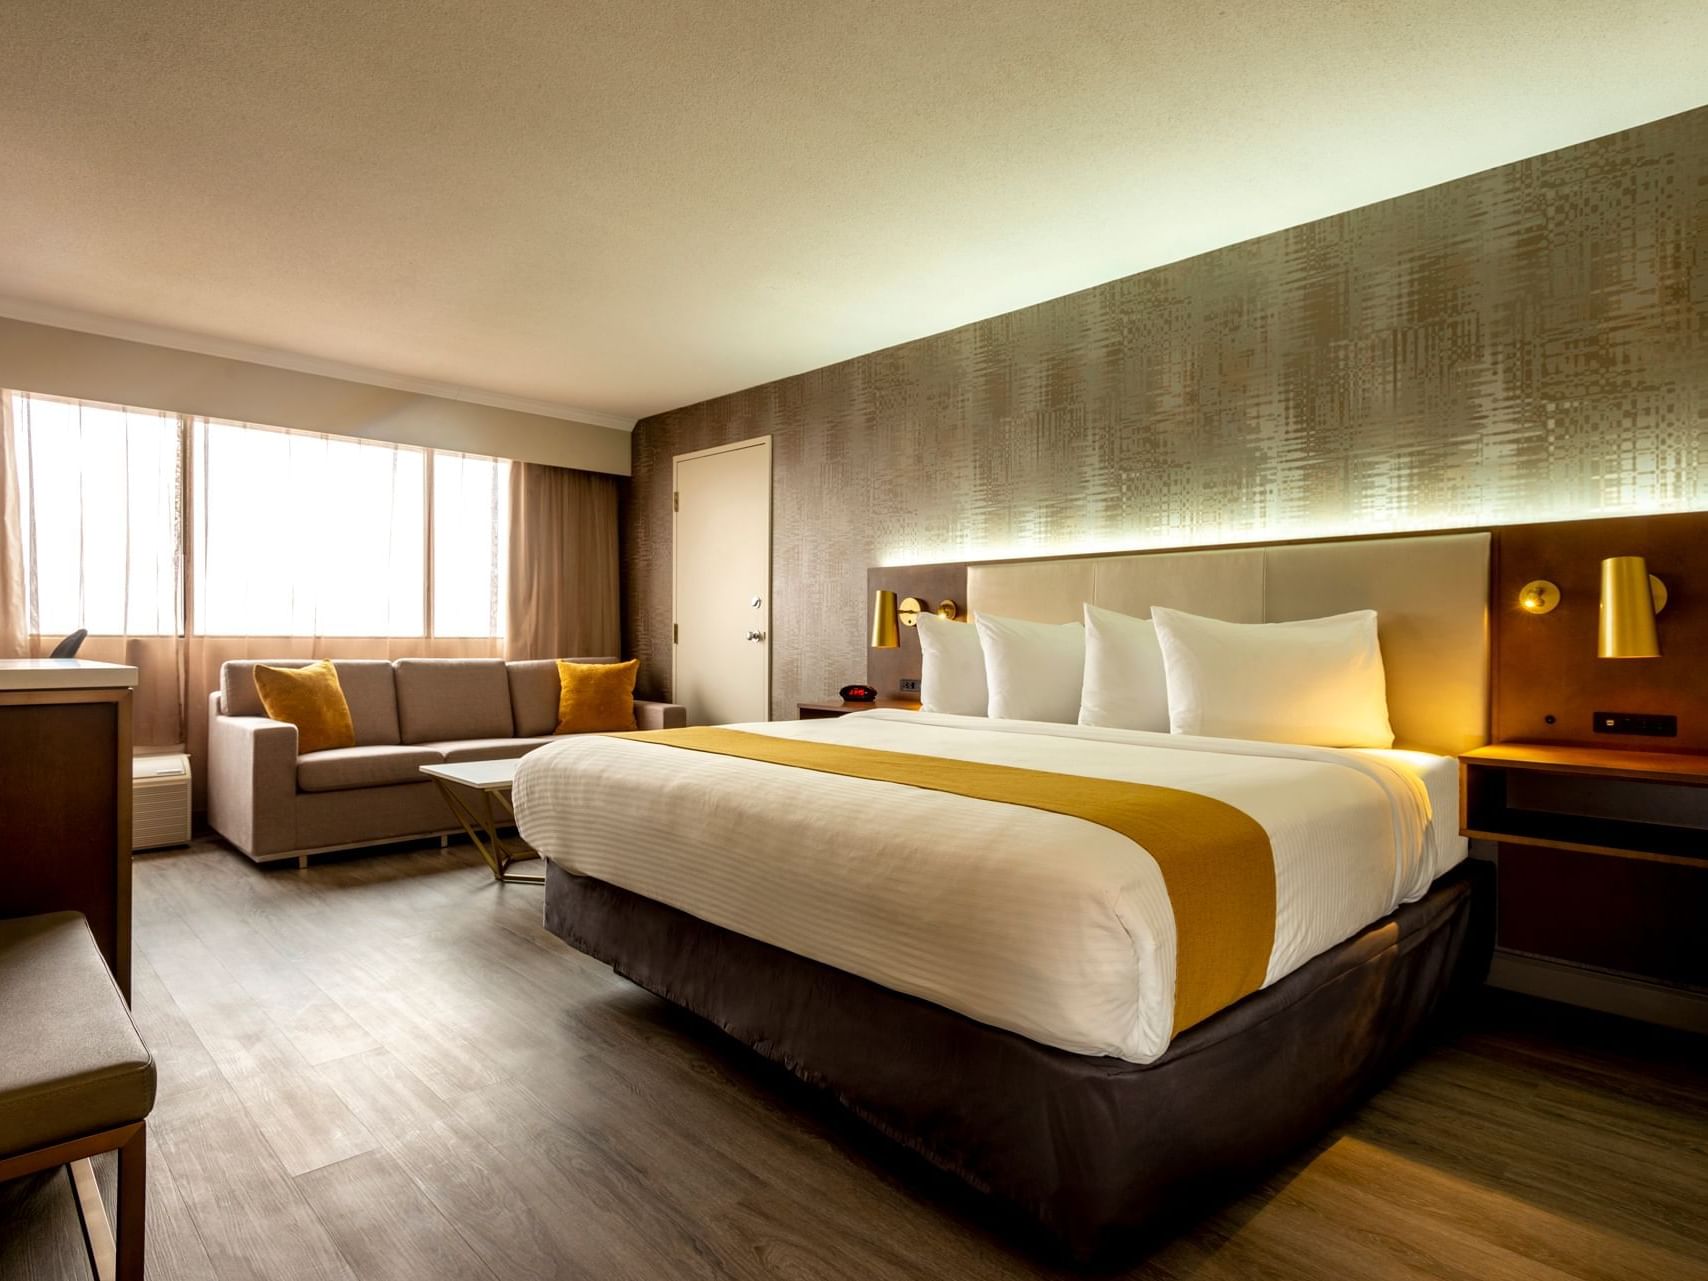 Bedroom arrangement in Gold Room at Atlantica Hotel Halifax